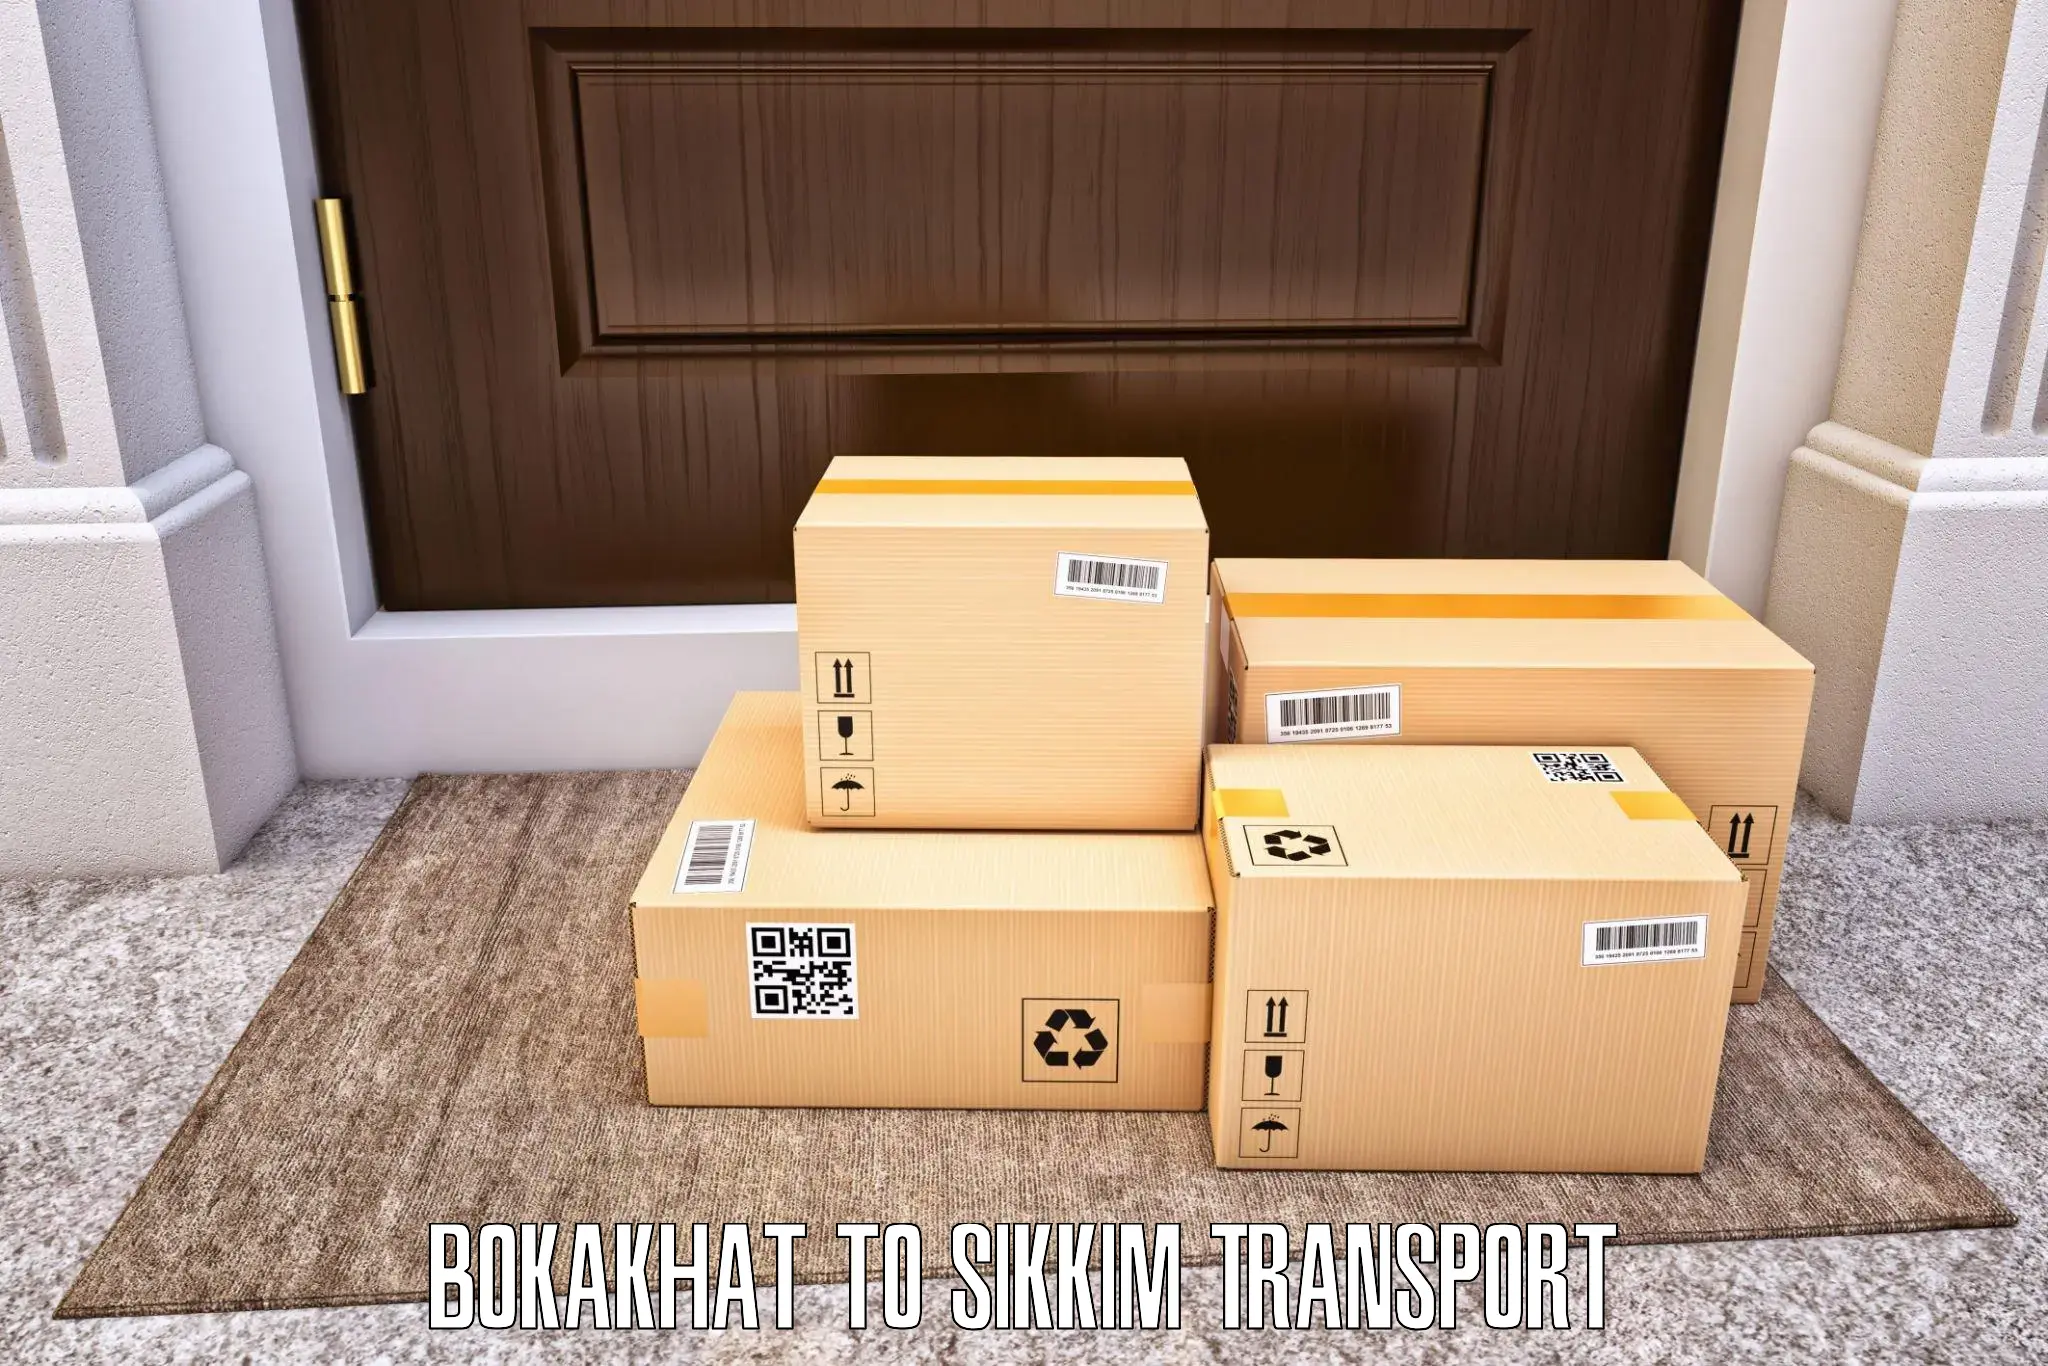 Transport in sharing Bokakhat to Mangan